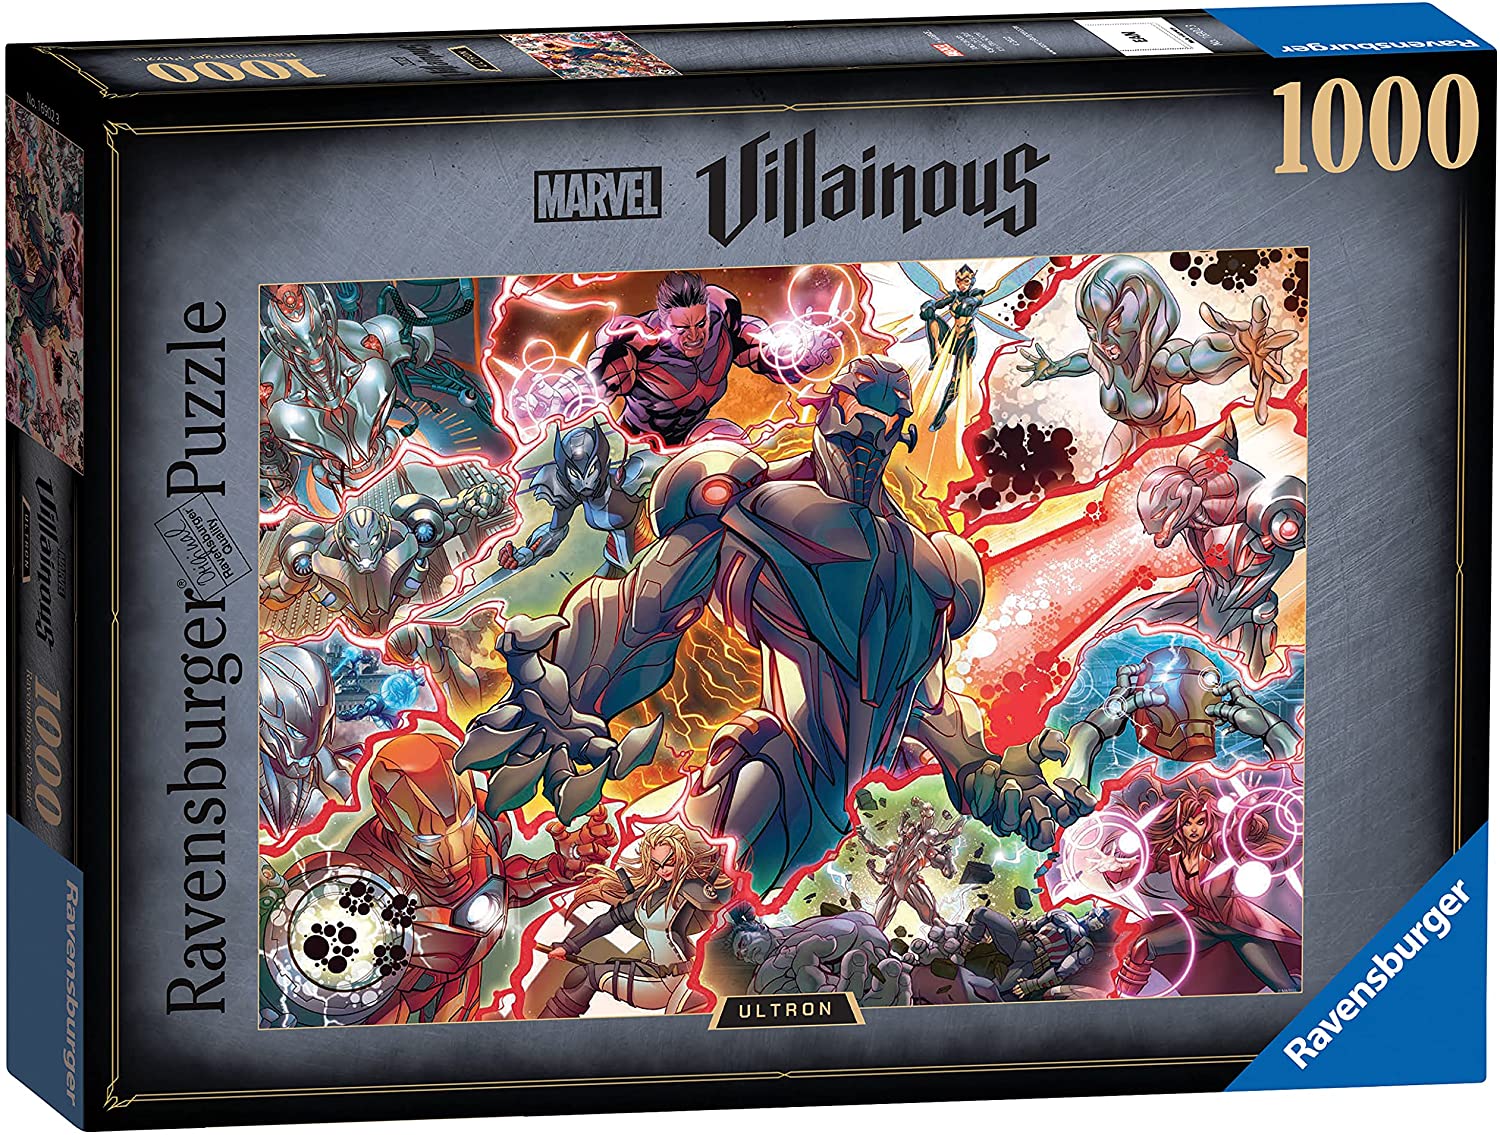 Disney Villainous - Ultron (1000 pc puzzle)